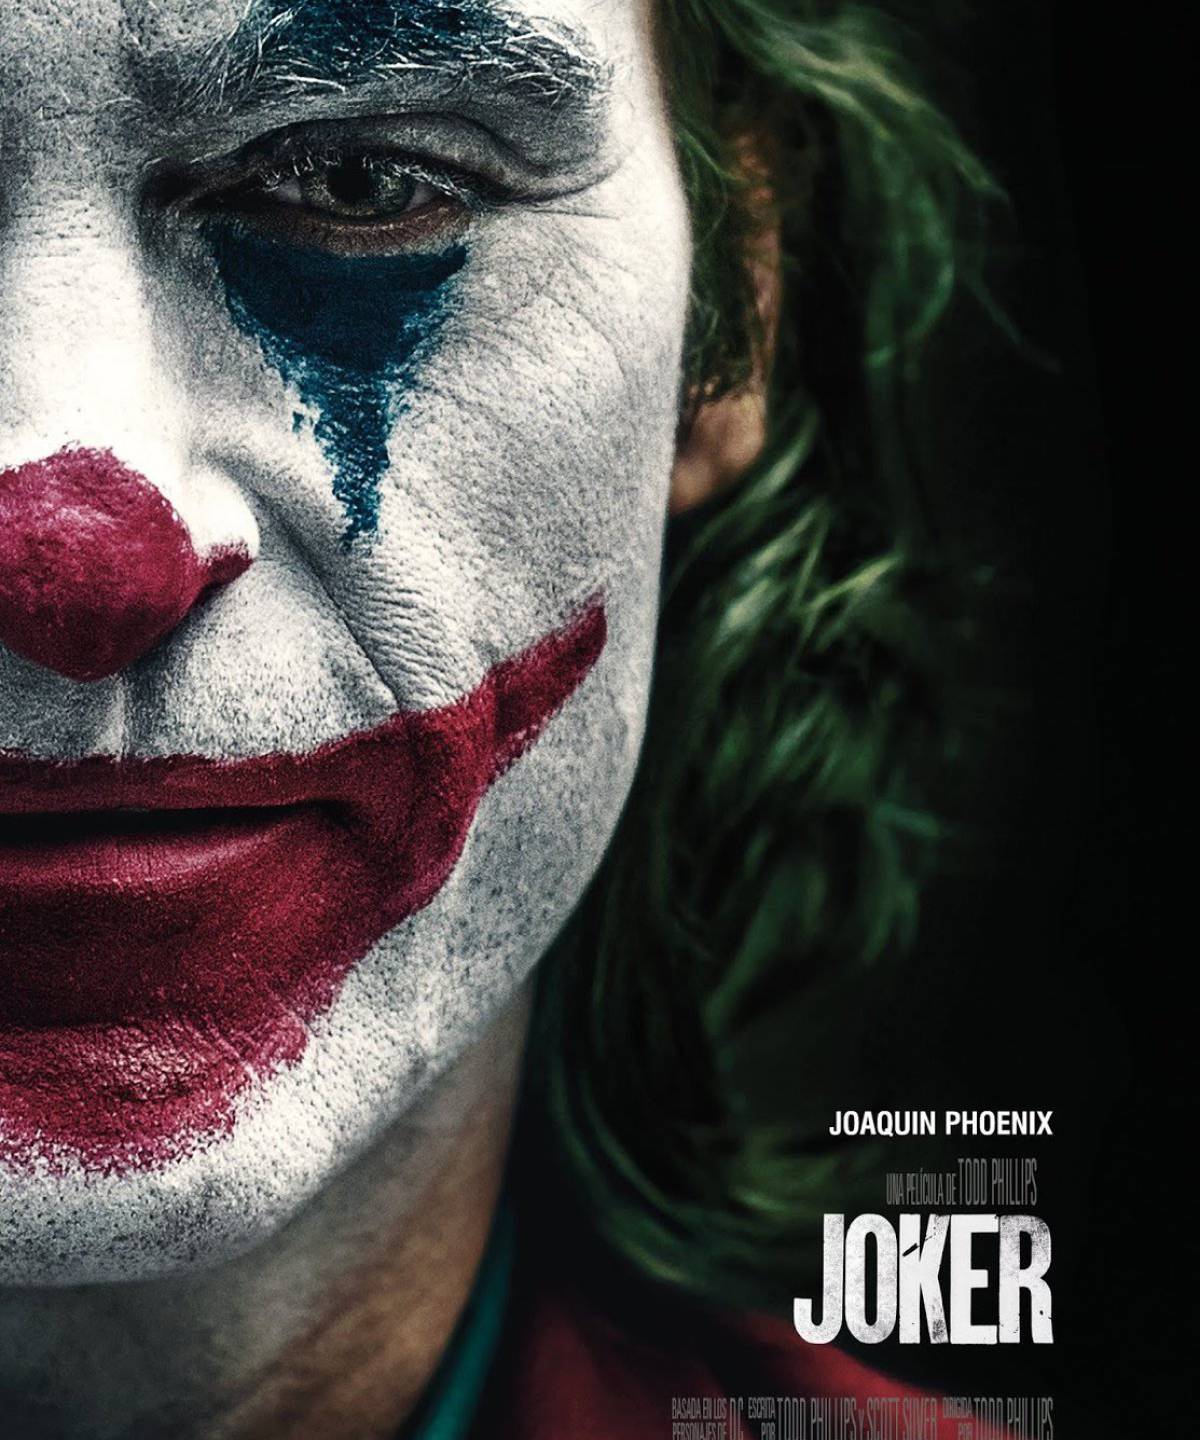 Joker (Todd Phillips)